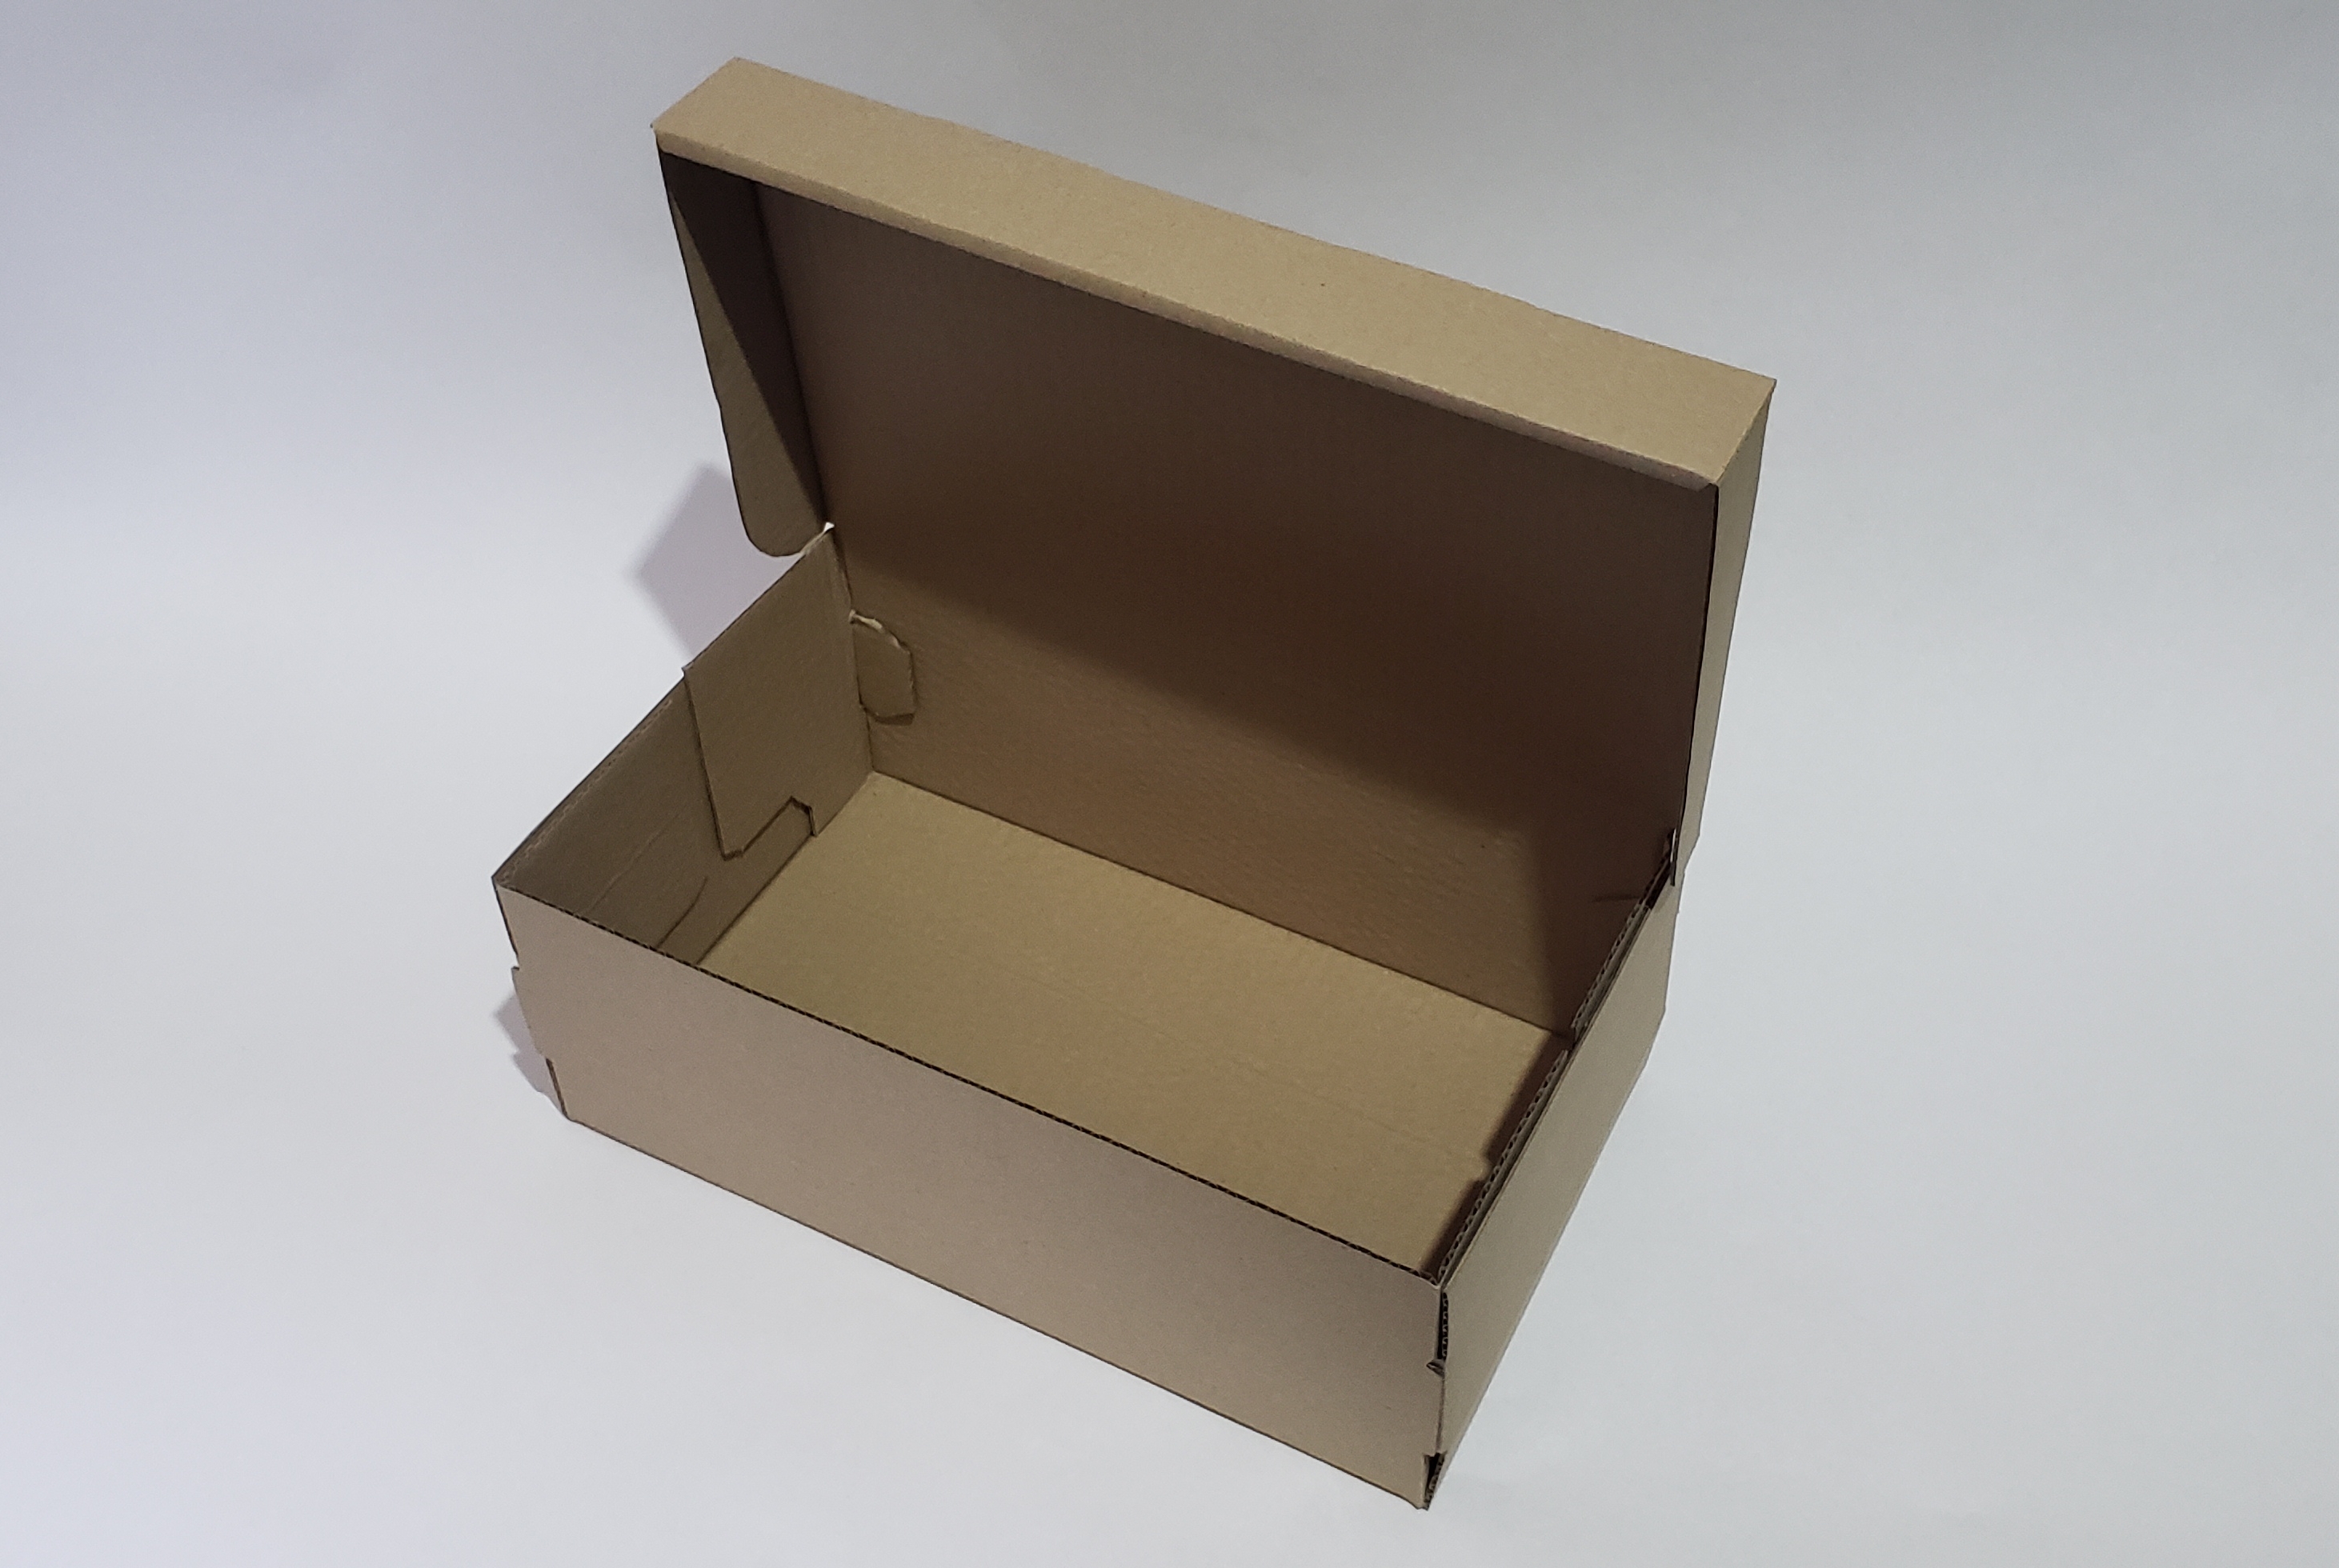 Caja 330x190x120 Zapato Hombre - Master Cajas